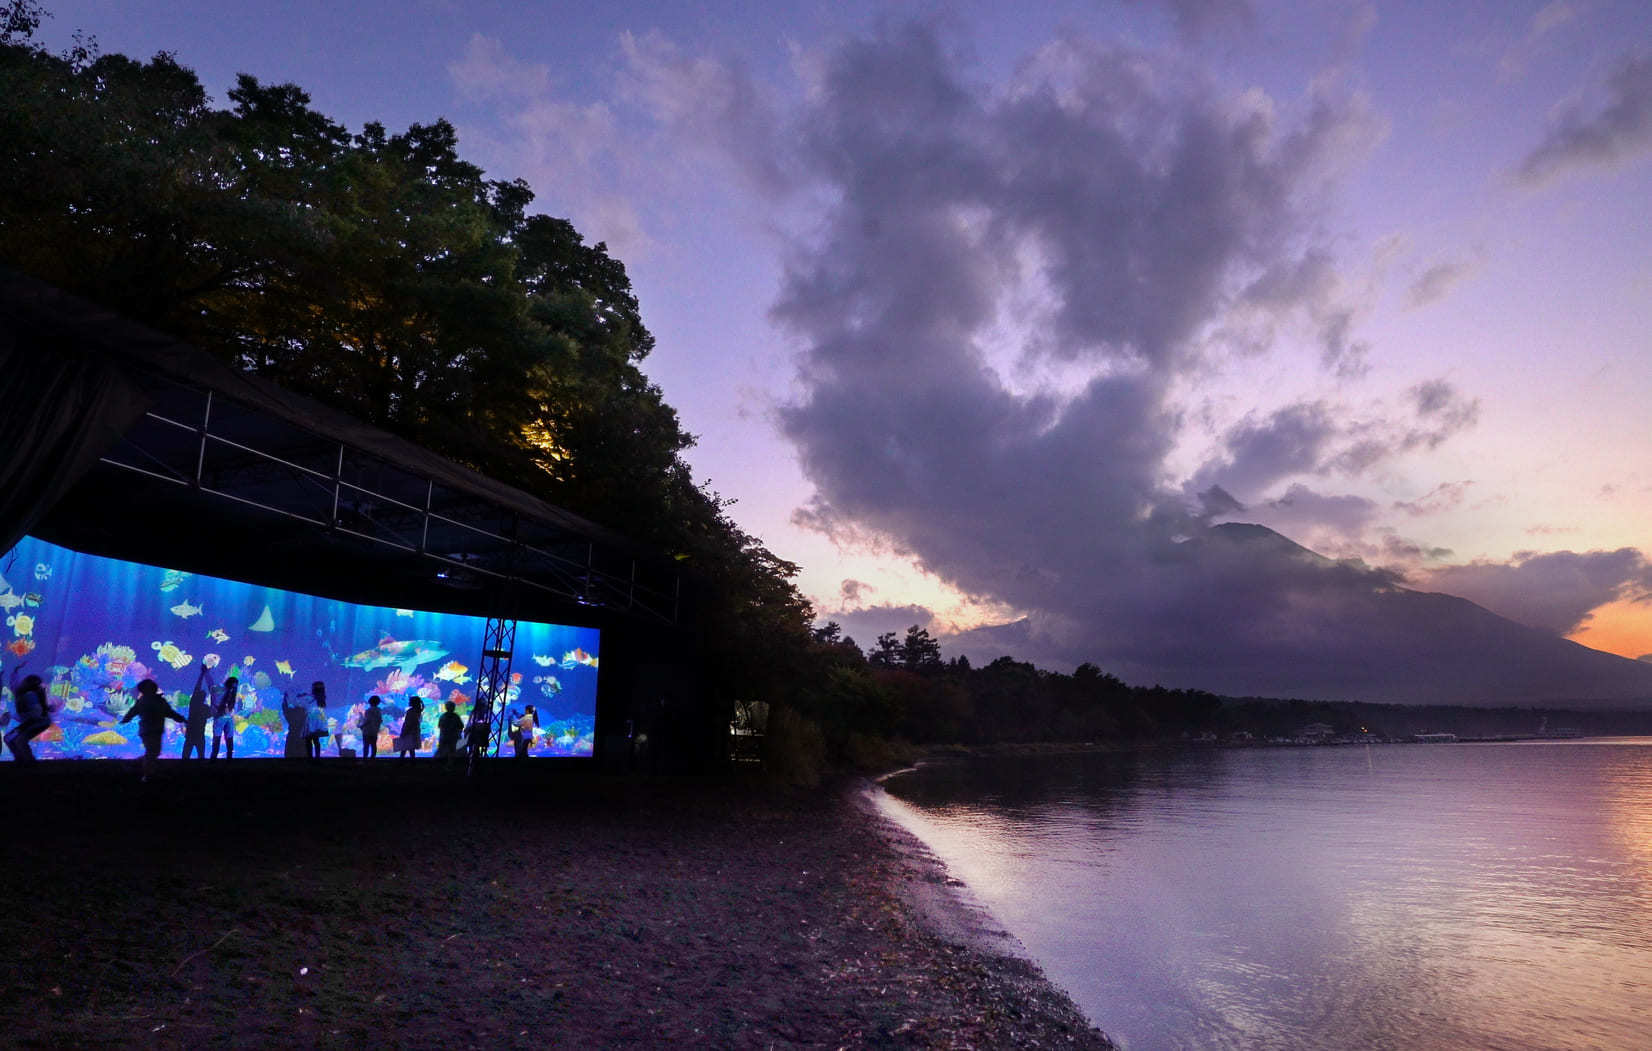 チームラボ、山梨・山中湖畔で期間限定の光のアート展をオープン。「チームラボ 山中湖 呼応する生命とお絵かき水族館」11月13日まで、紅葉まつりと同時開催。#Z世代Pick